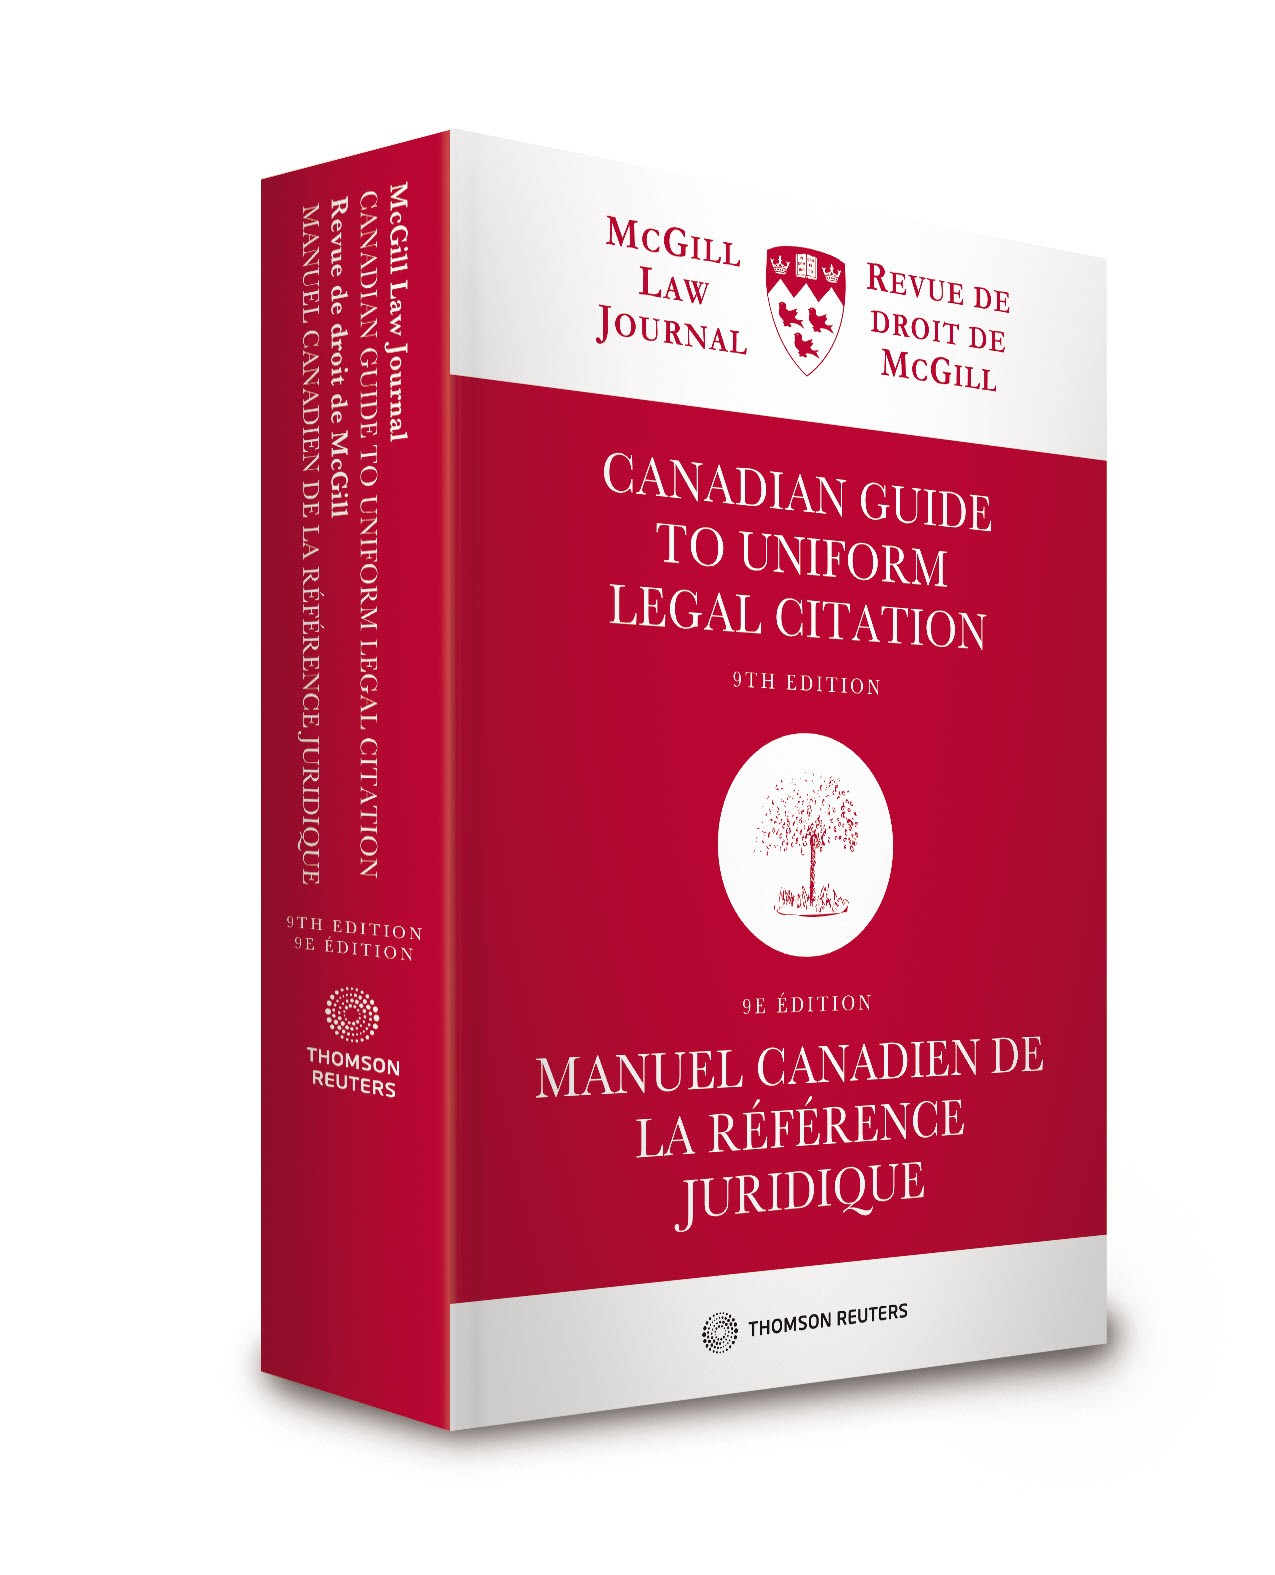 Canadian Guide to Uniform Legal Citation, 9th Edition / Manuel canadien de la référence juridique, 9e édition